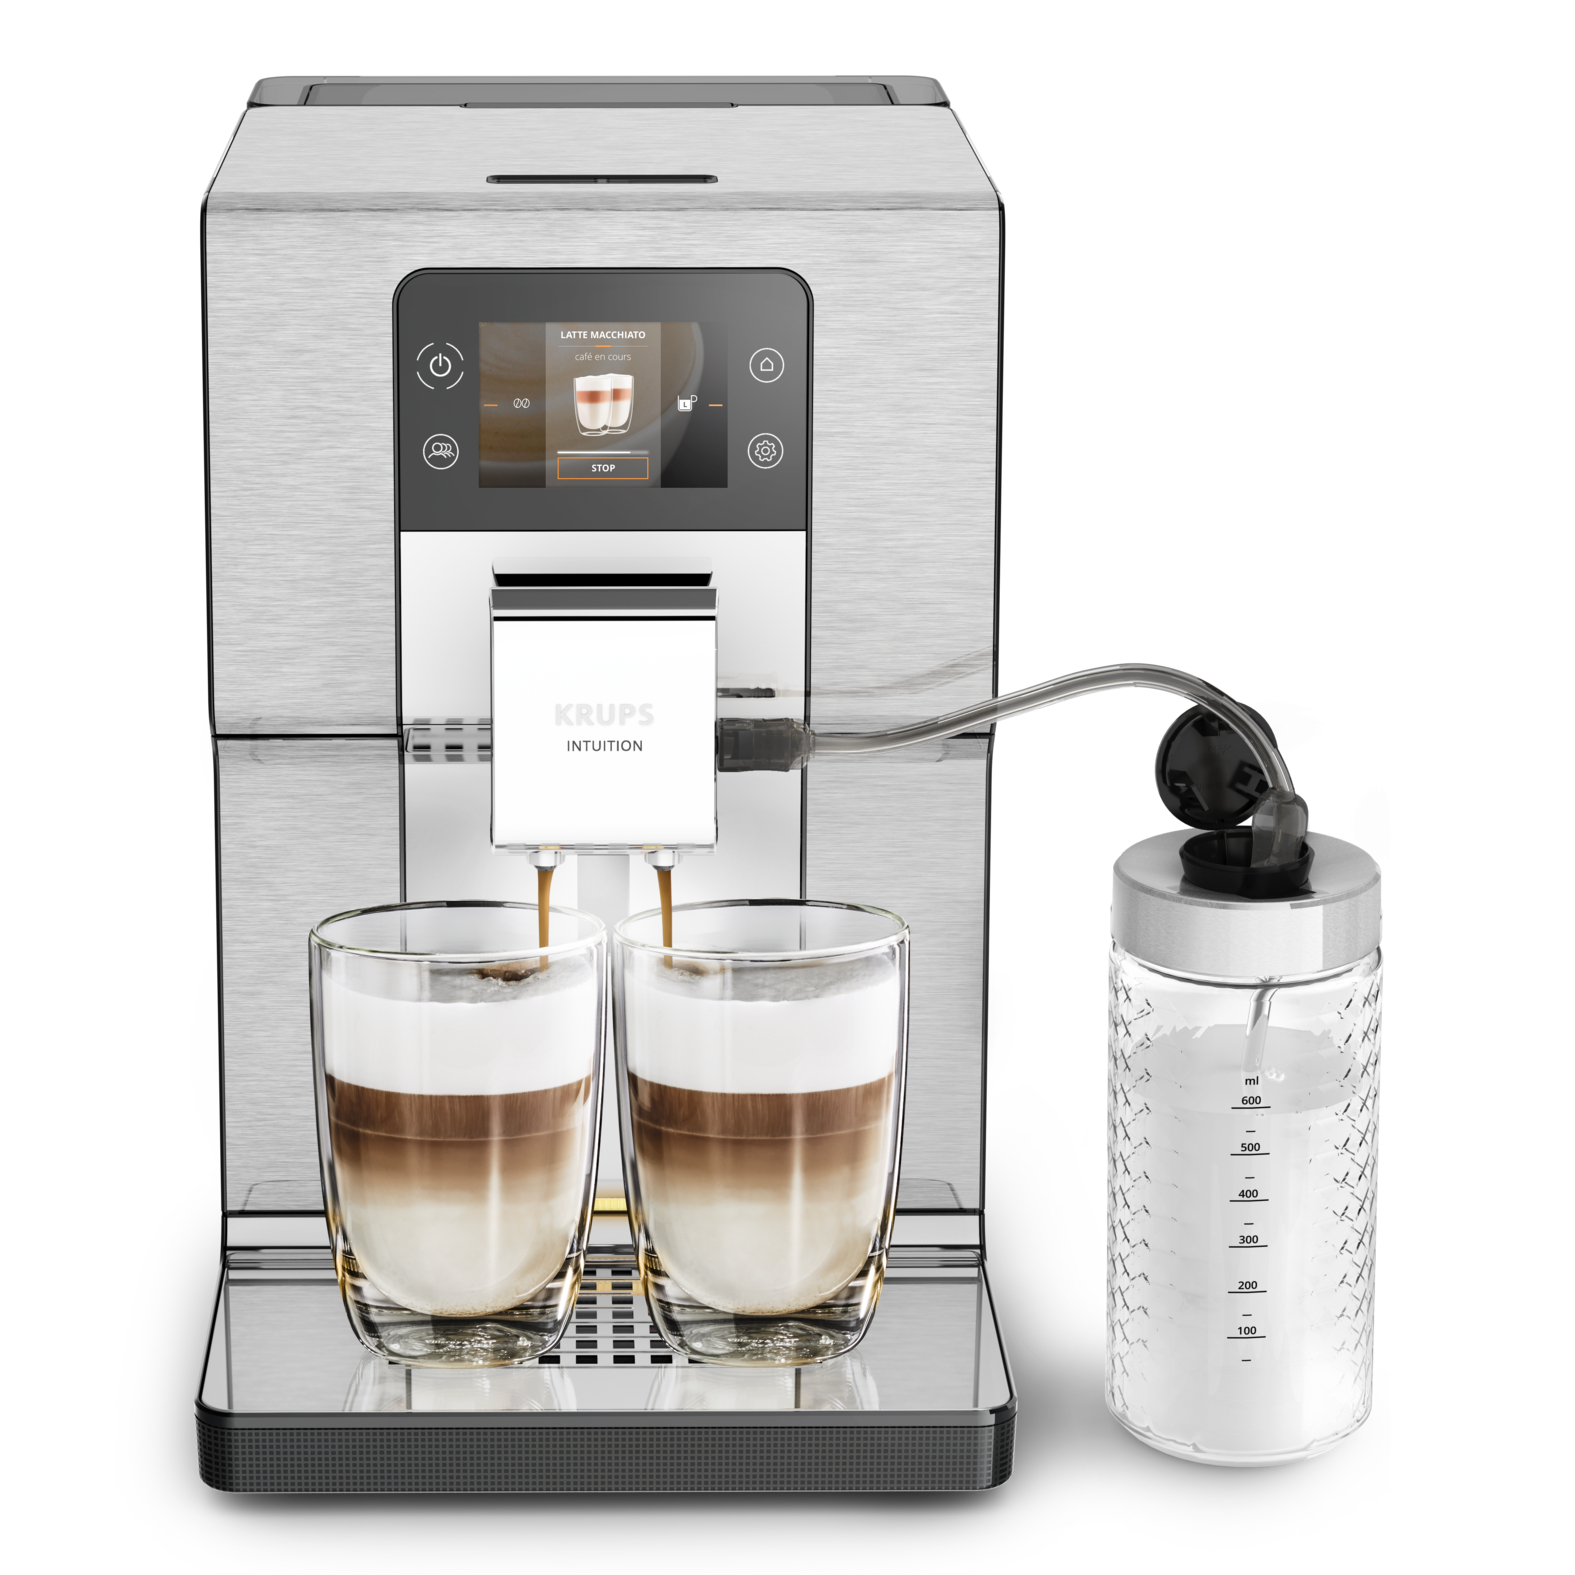 Автоматическая кофемашина Krups Intuition Experience + EA877D10, цвет черный/металлик Intuition Experience + EA877D10 - фото 1